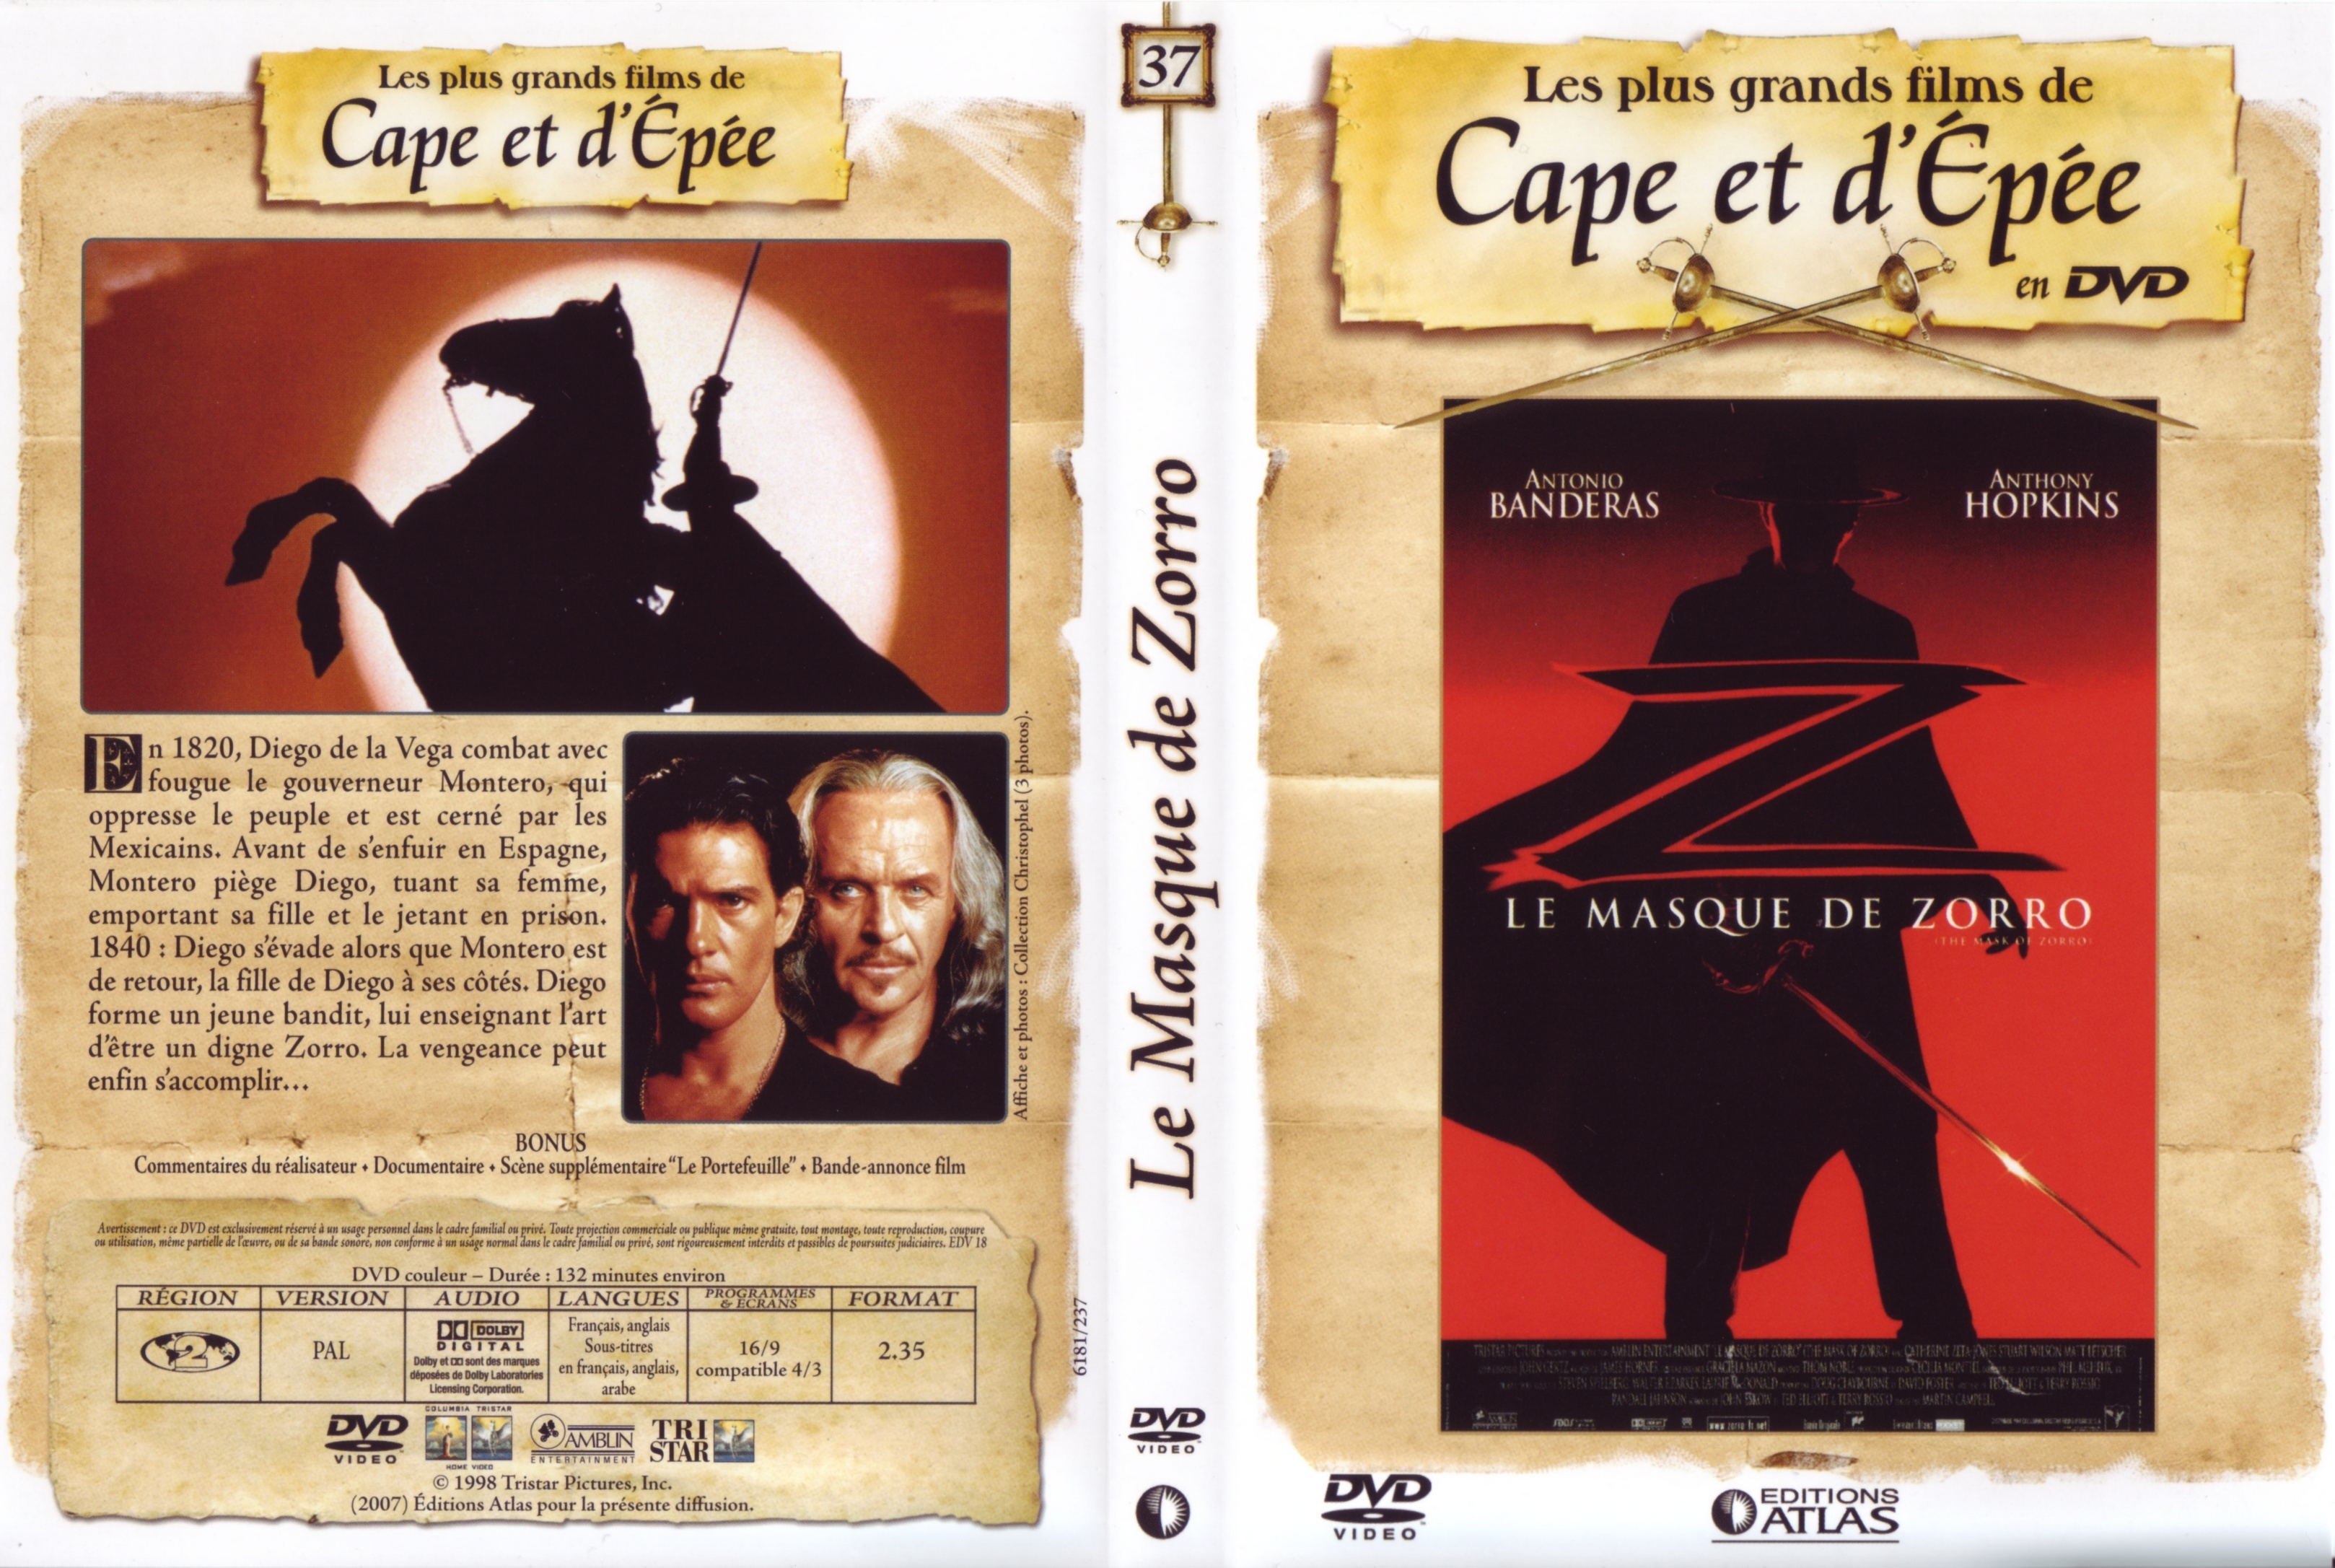 Jaquette DVD Le masque de Zorro v4